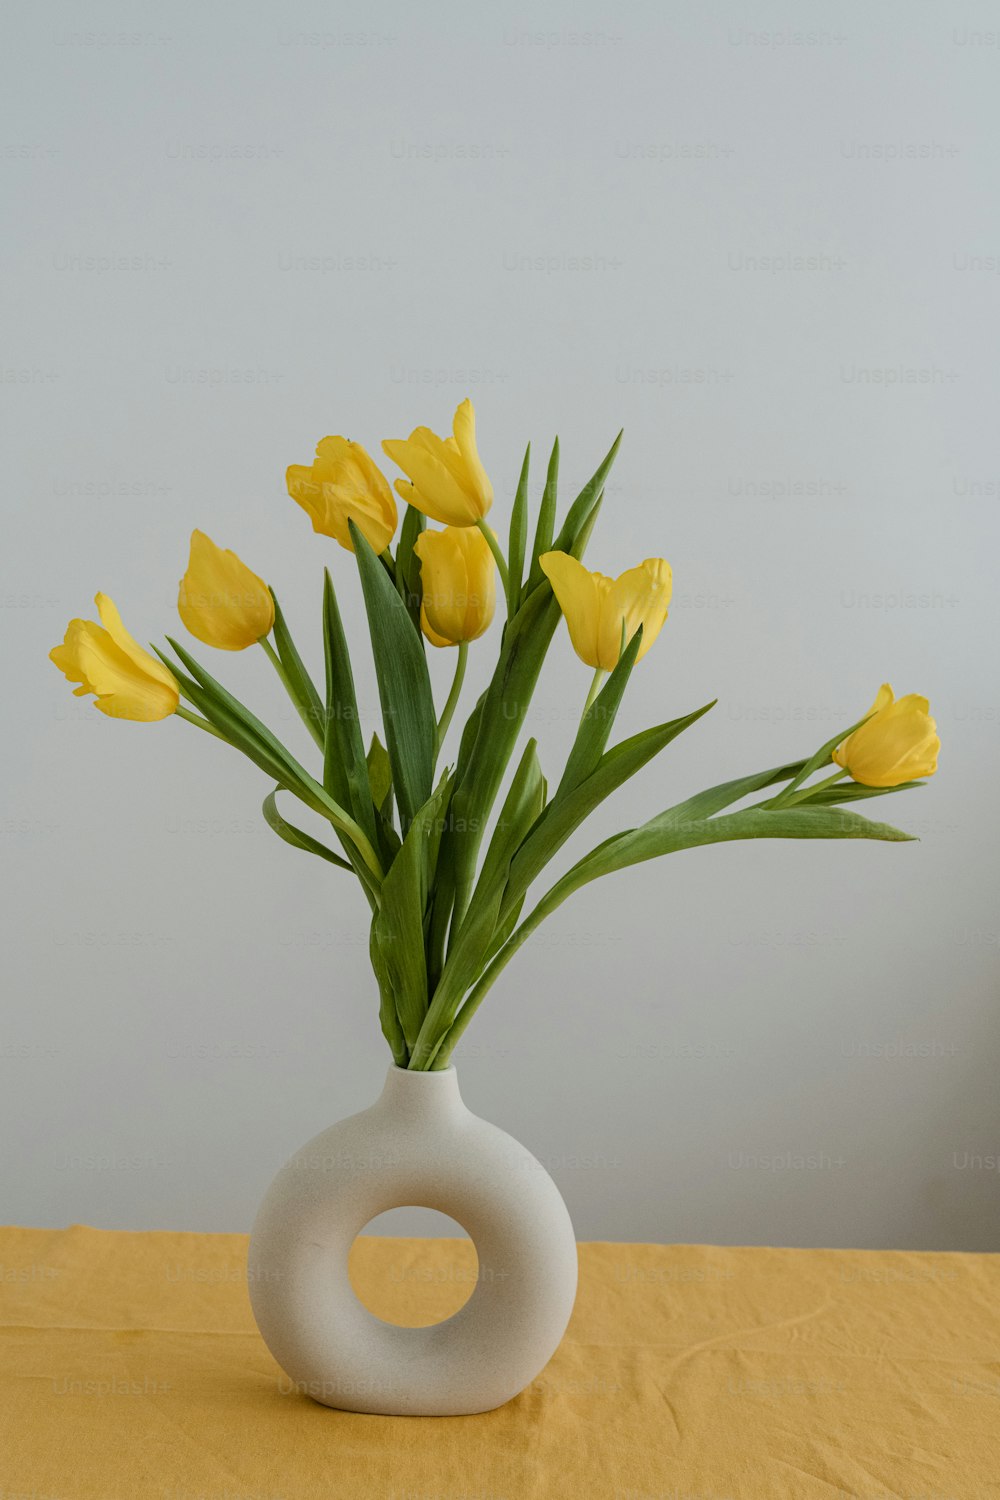 テーブルの上に黄色い花でいっ��ぱいの花瓶